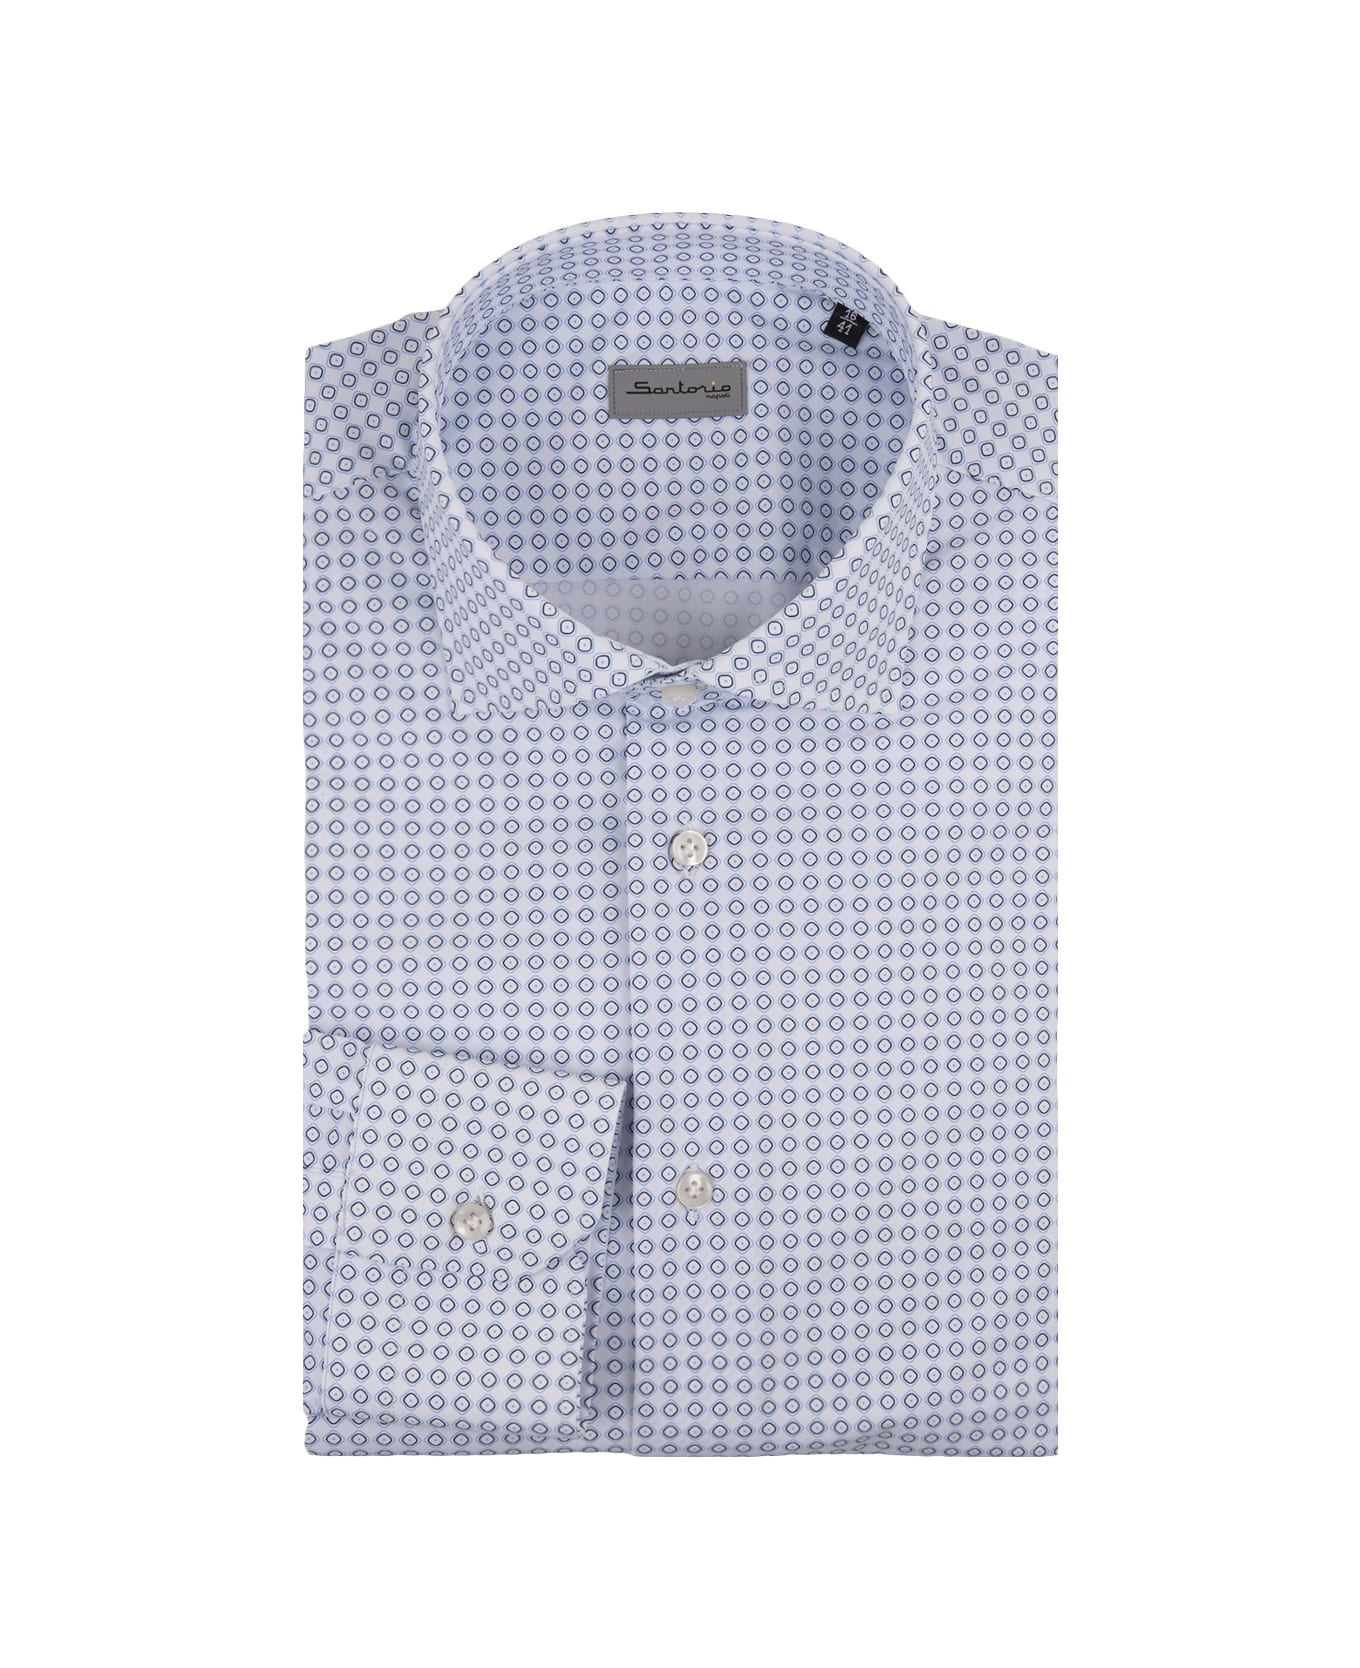 Sartorio Napoli White Shirt With Blue Pattern - Blue